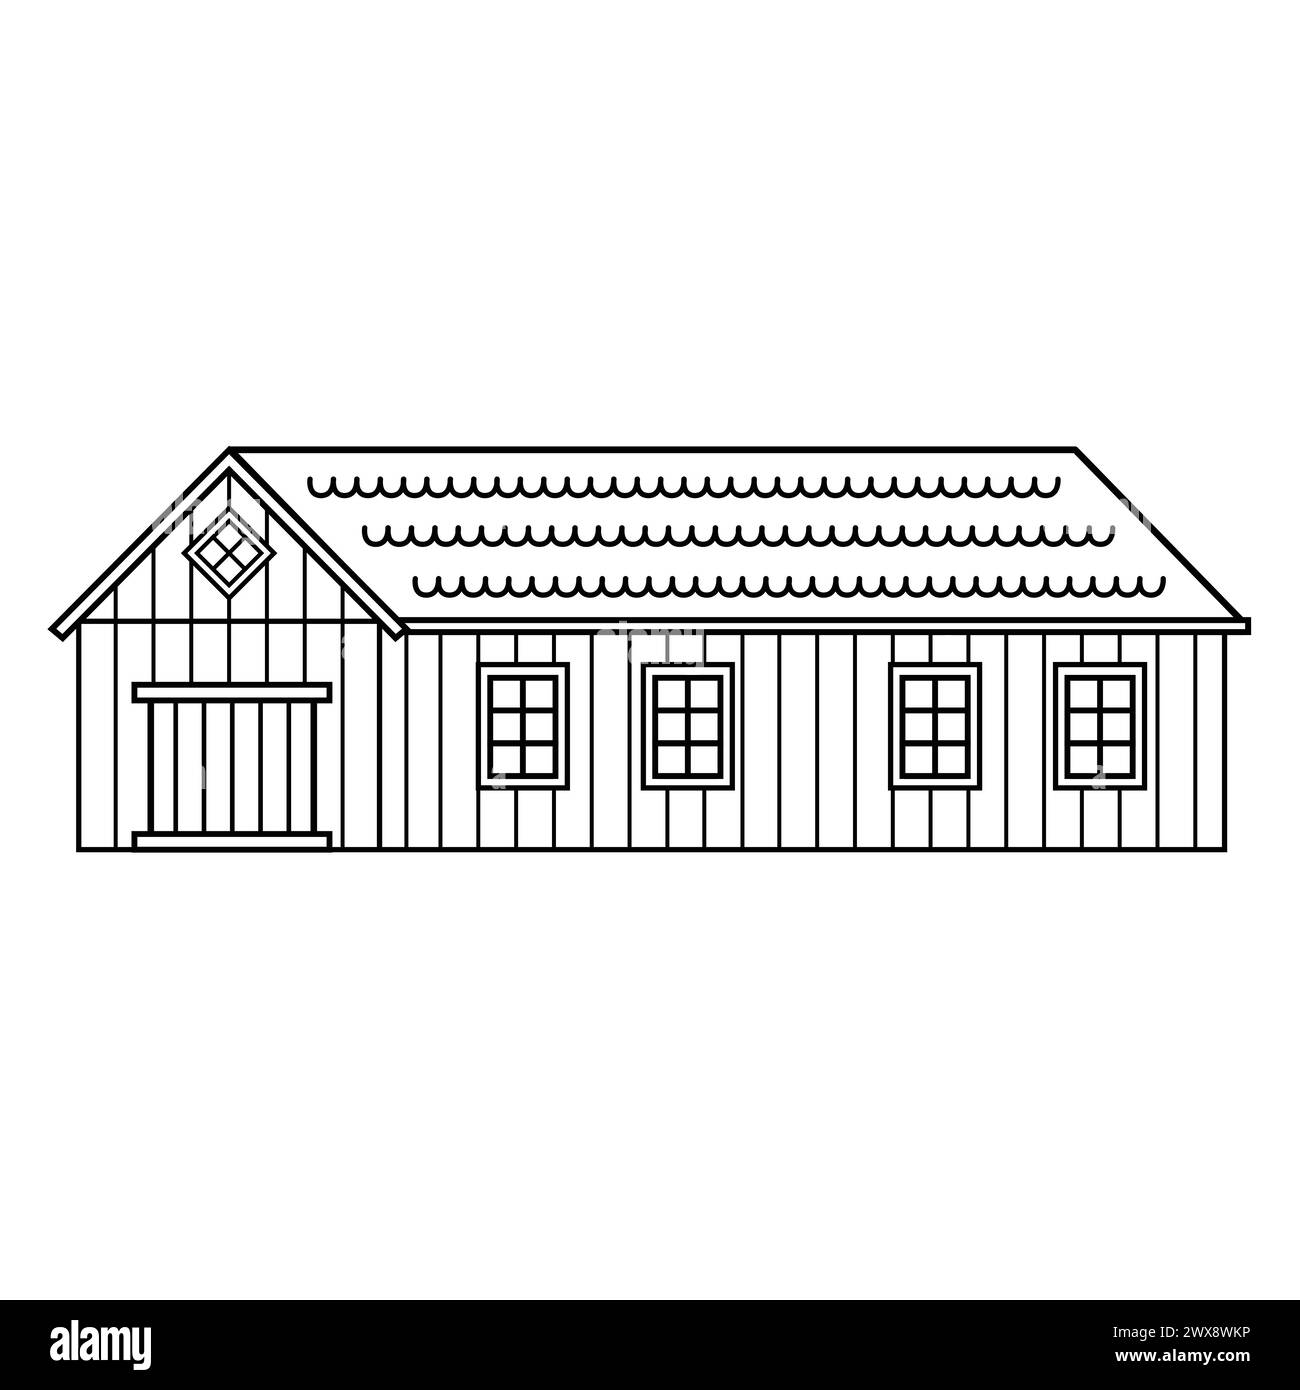 Vektorhaus mit Tür und Fenstern. Schwarz-weiße, monochrome Holzscheune. Isolierte Illustration auf weißem Hintergrund für Malbuch Stock Vektor